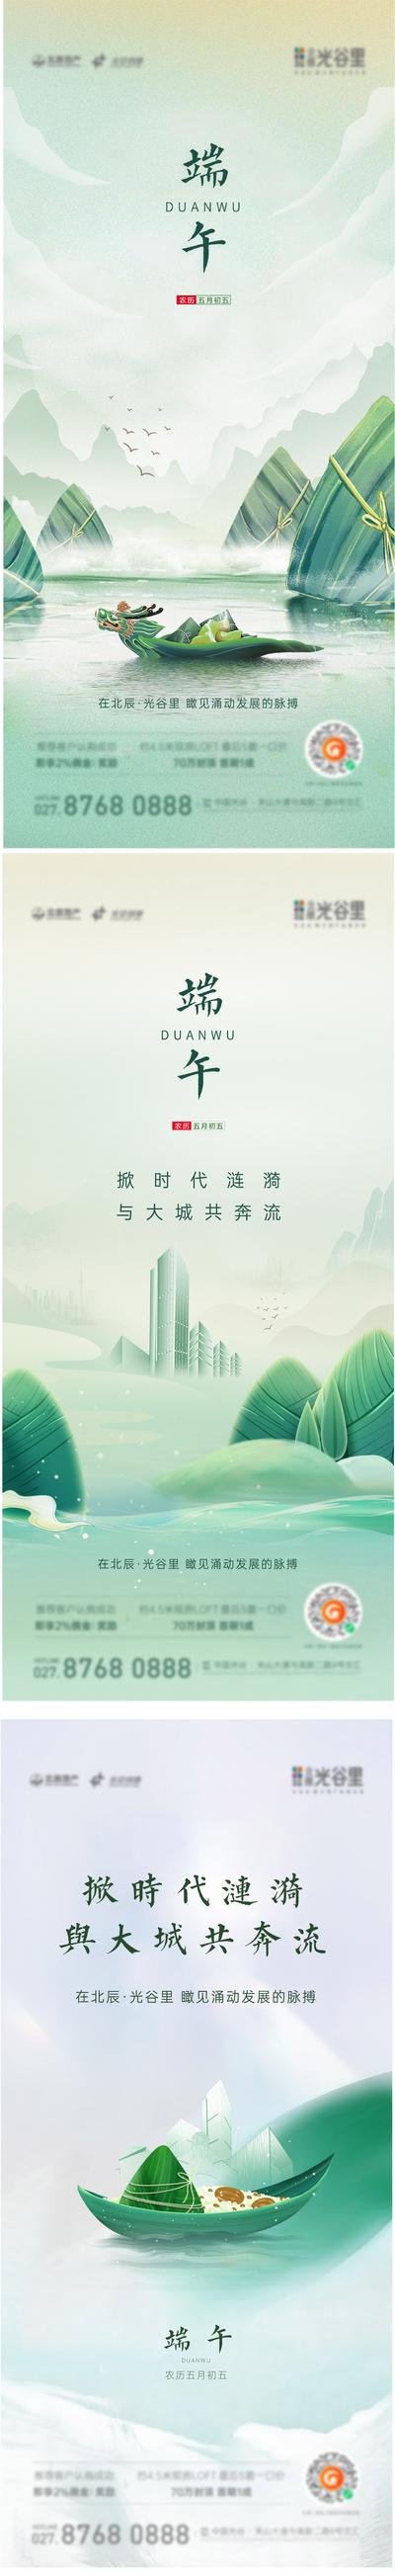 南门网 海报 长图 工业 锂电池 新能源 产品 介绍